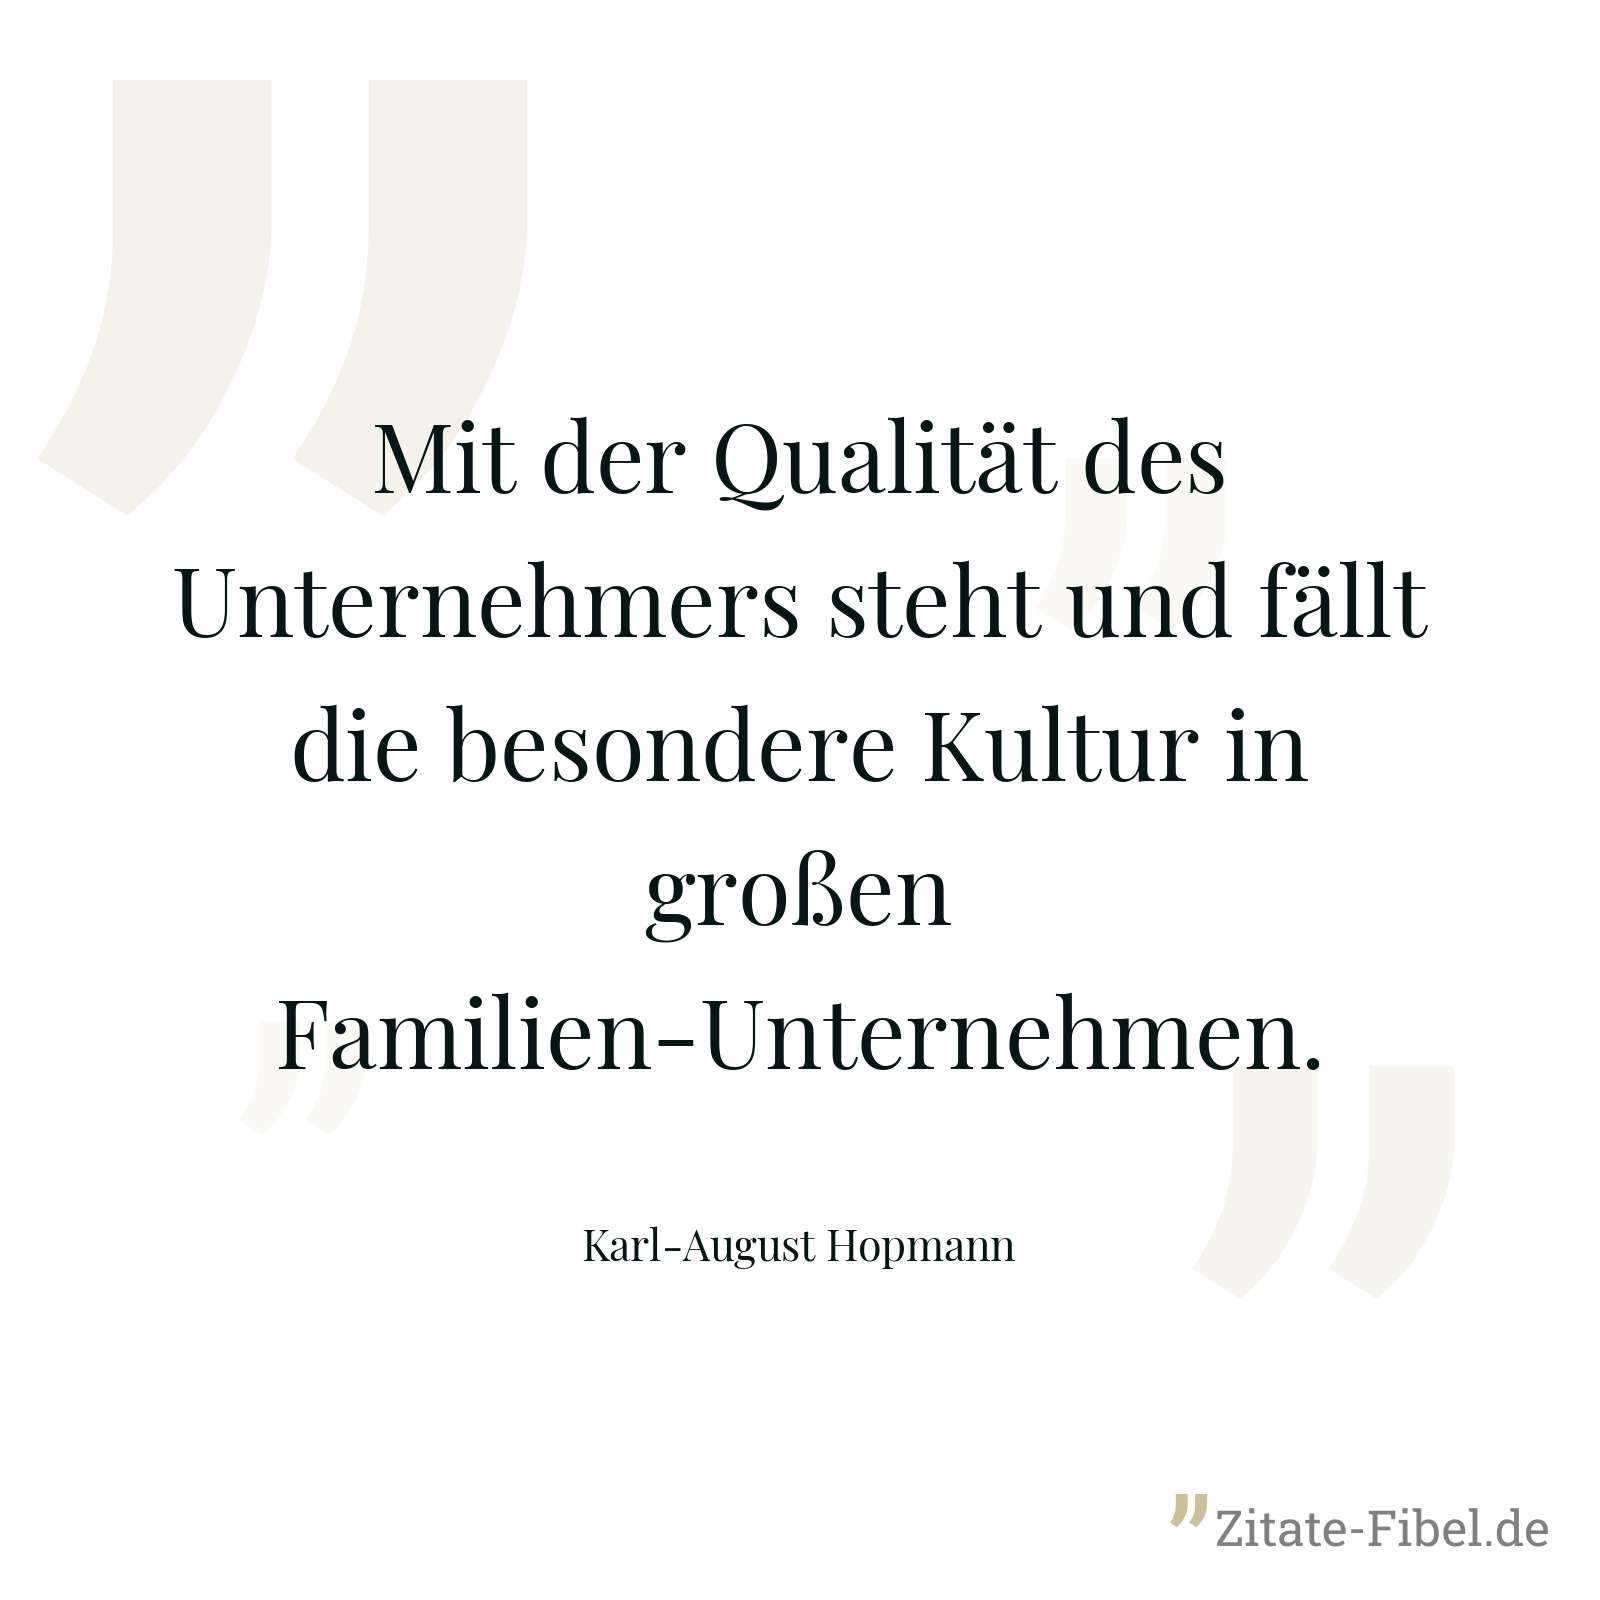 Mit der Qualität des Unternehmers steht und fällt die besondere Kultur in großen Familien-Unternehmen. - Karl-August Hopmann